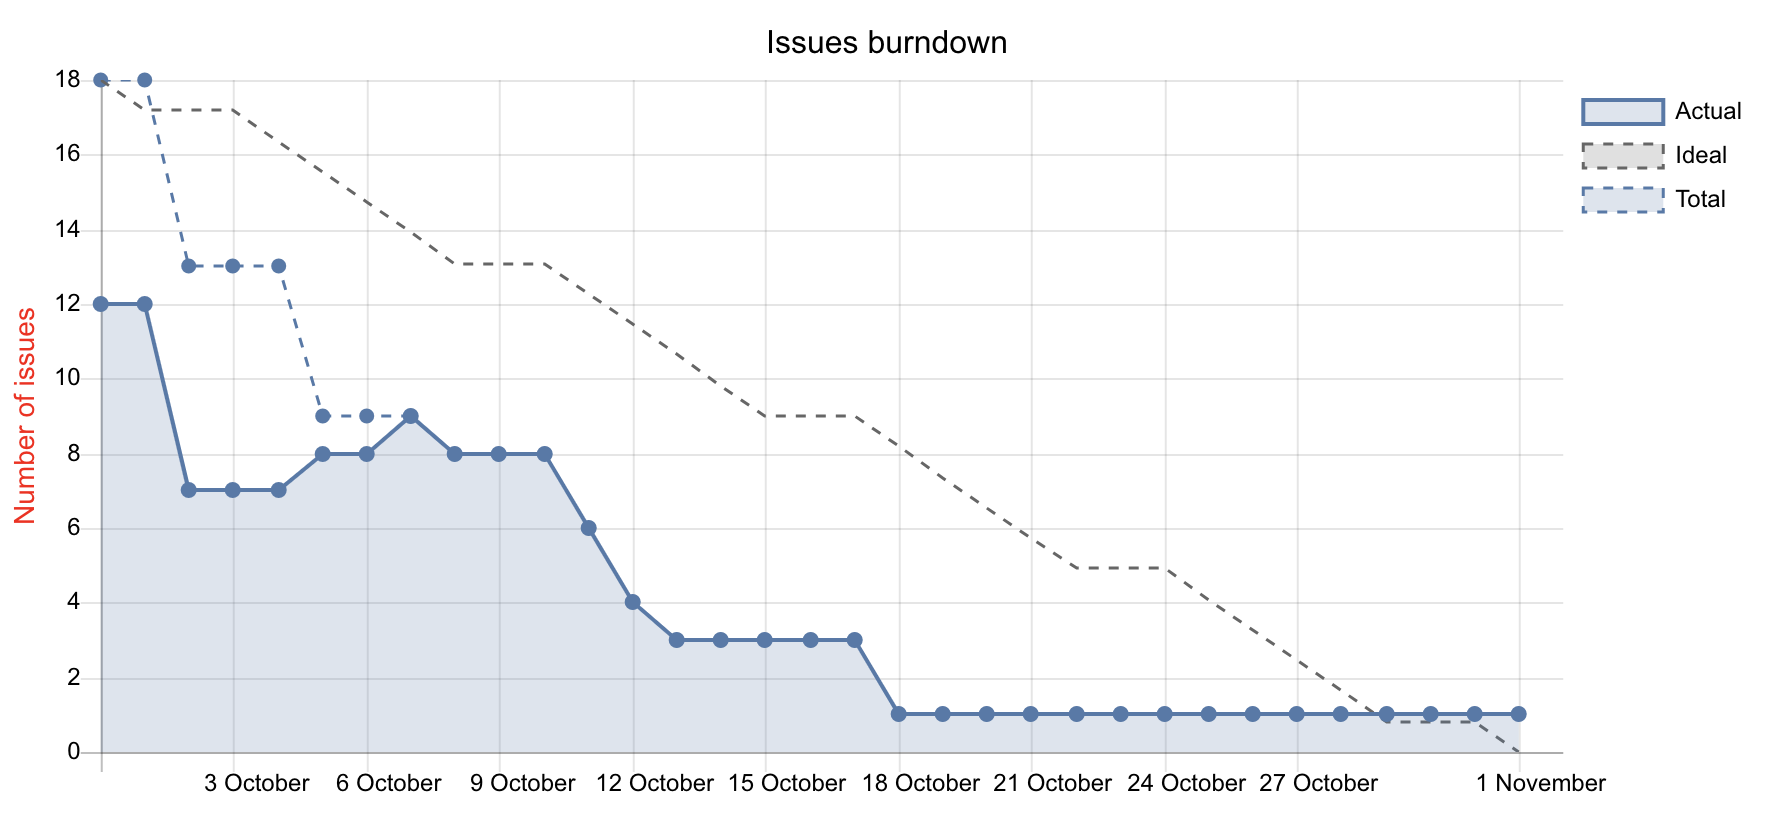 Burndown charts